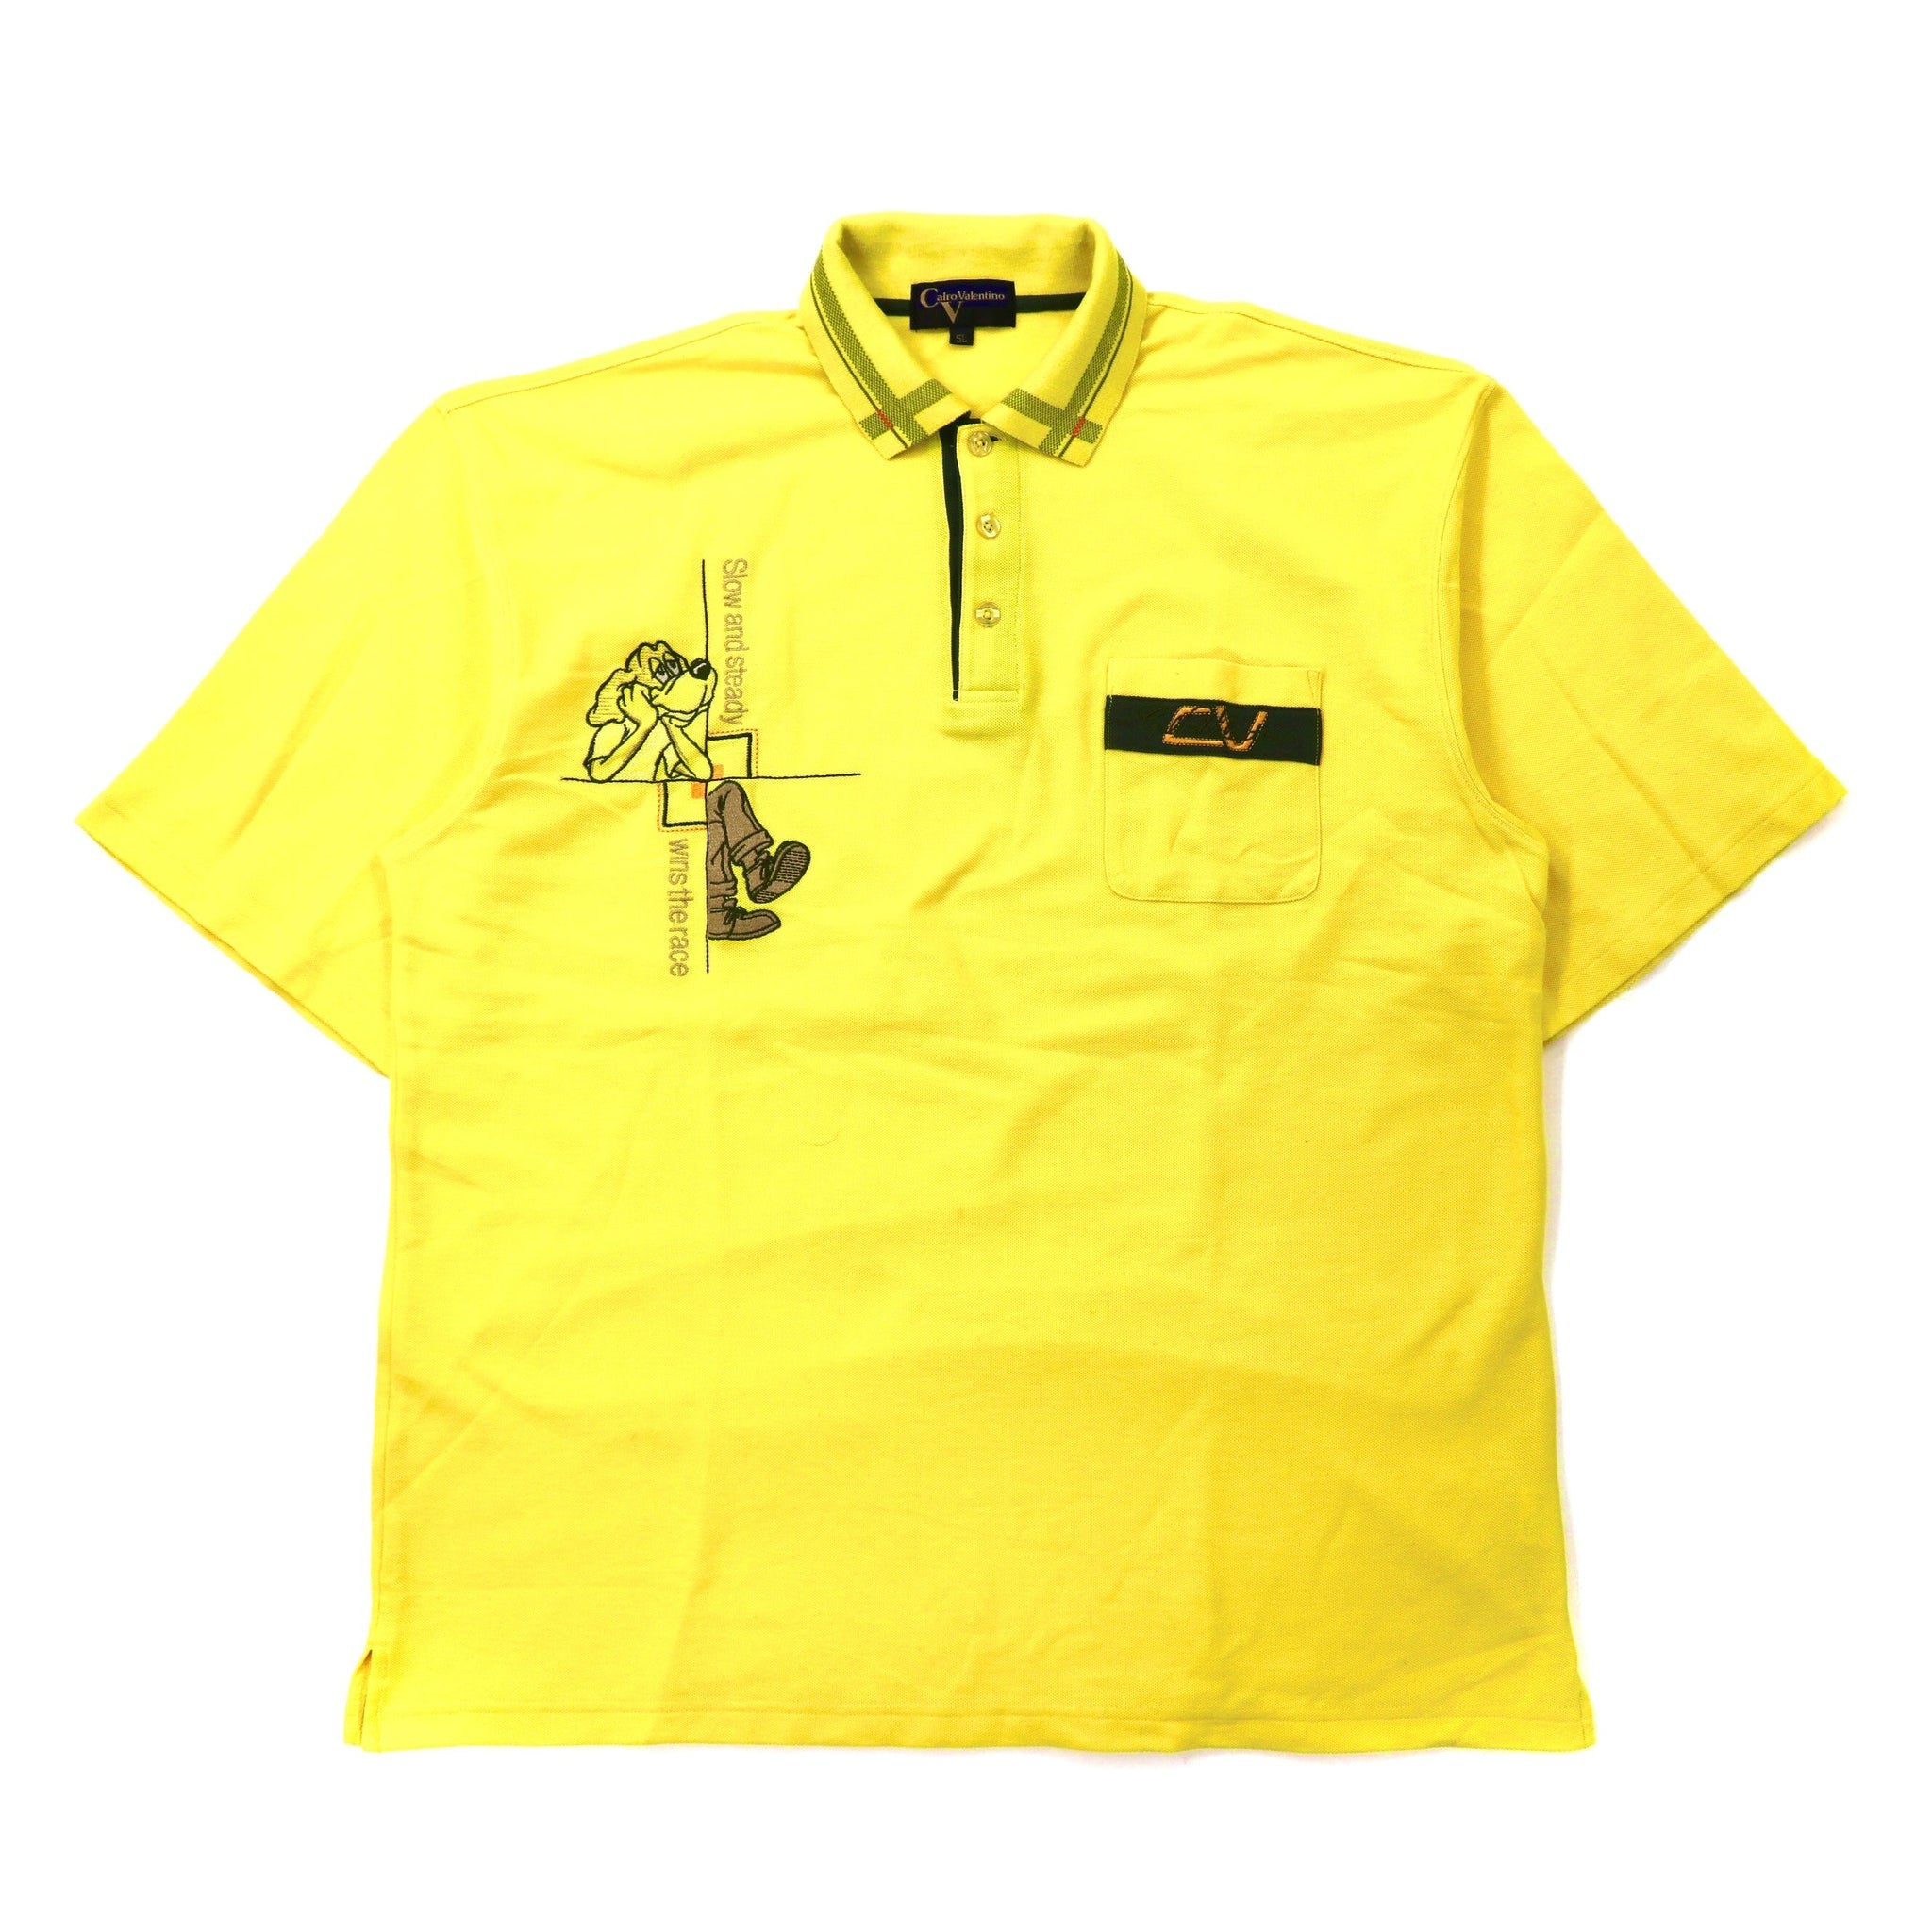 Calro Valentino ビッグサイズ ポロシャツ 5L イエロー コットン 犬 キャラクター刺繍